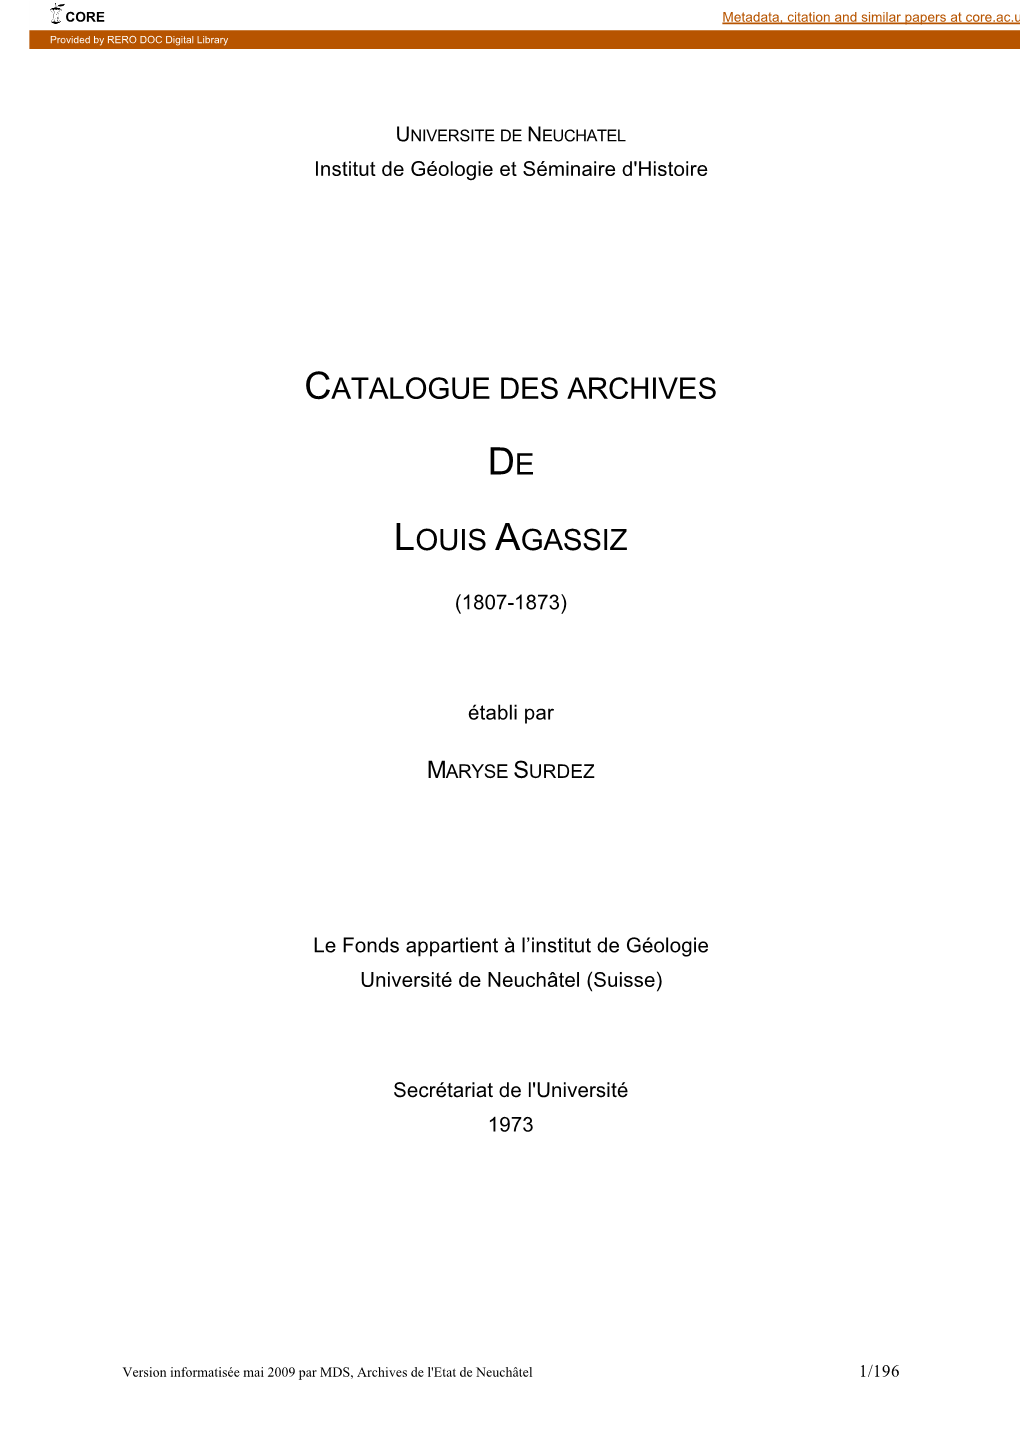 Inventaire Louis Agassiz